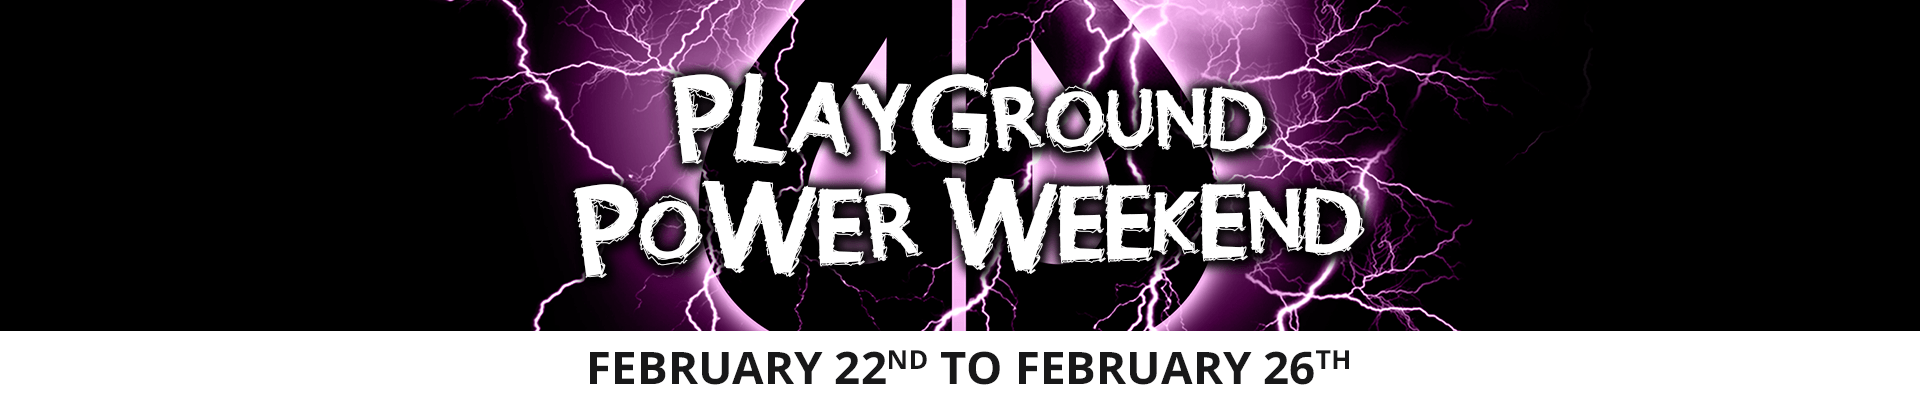 Playground Power Weekend 2018